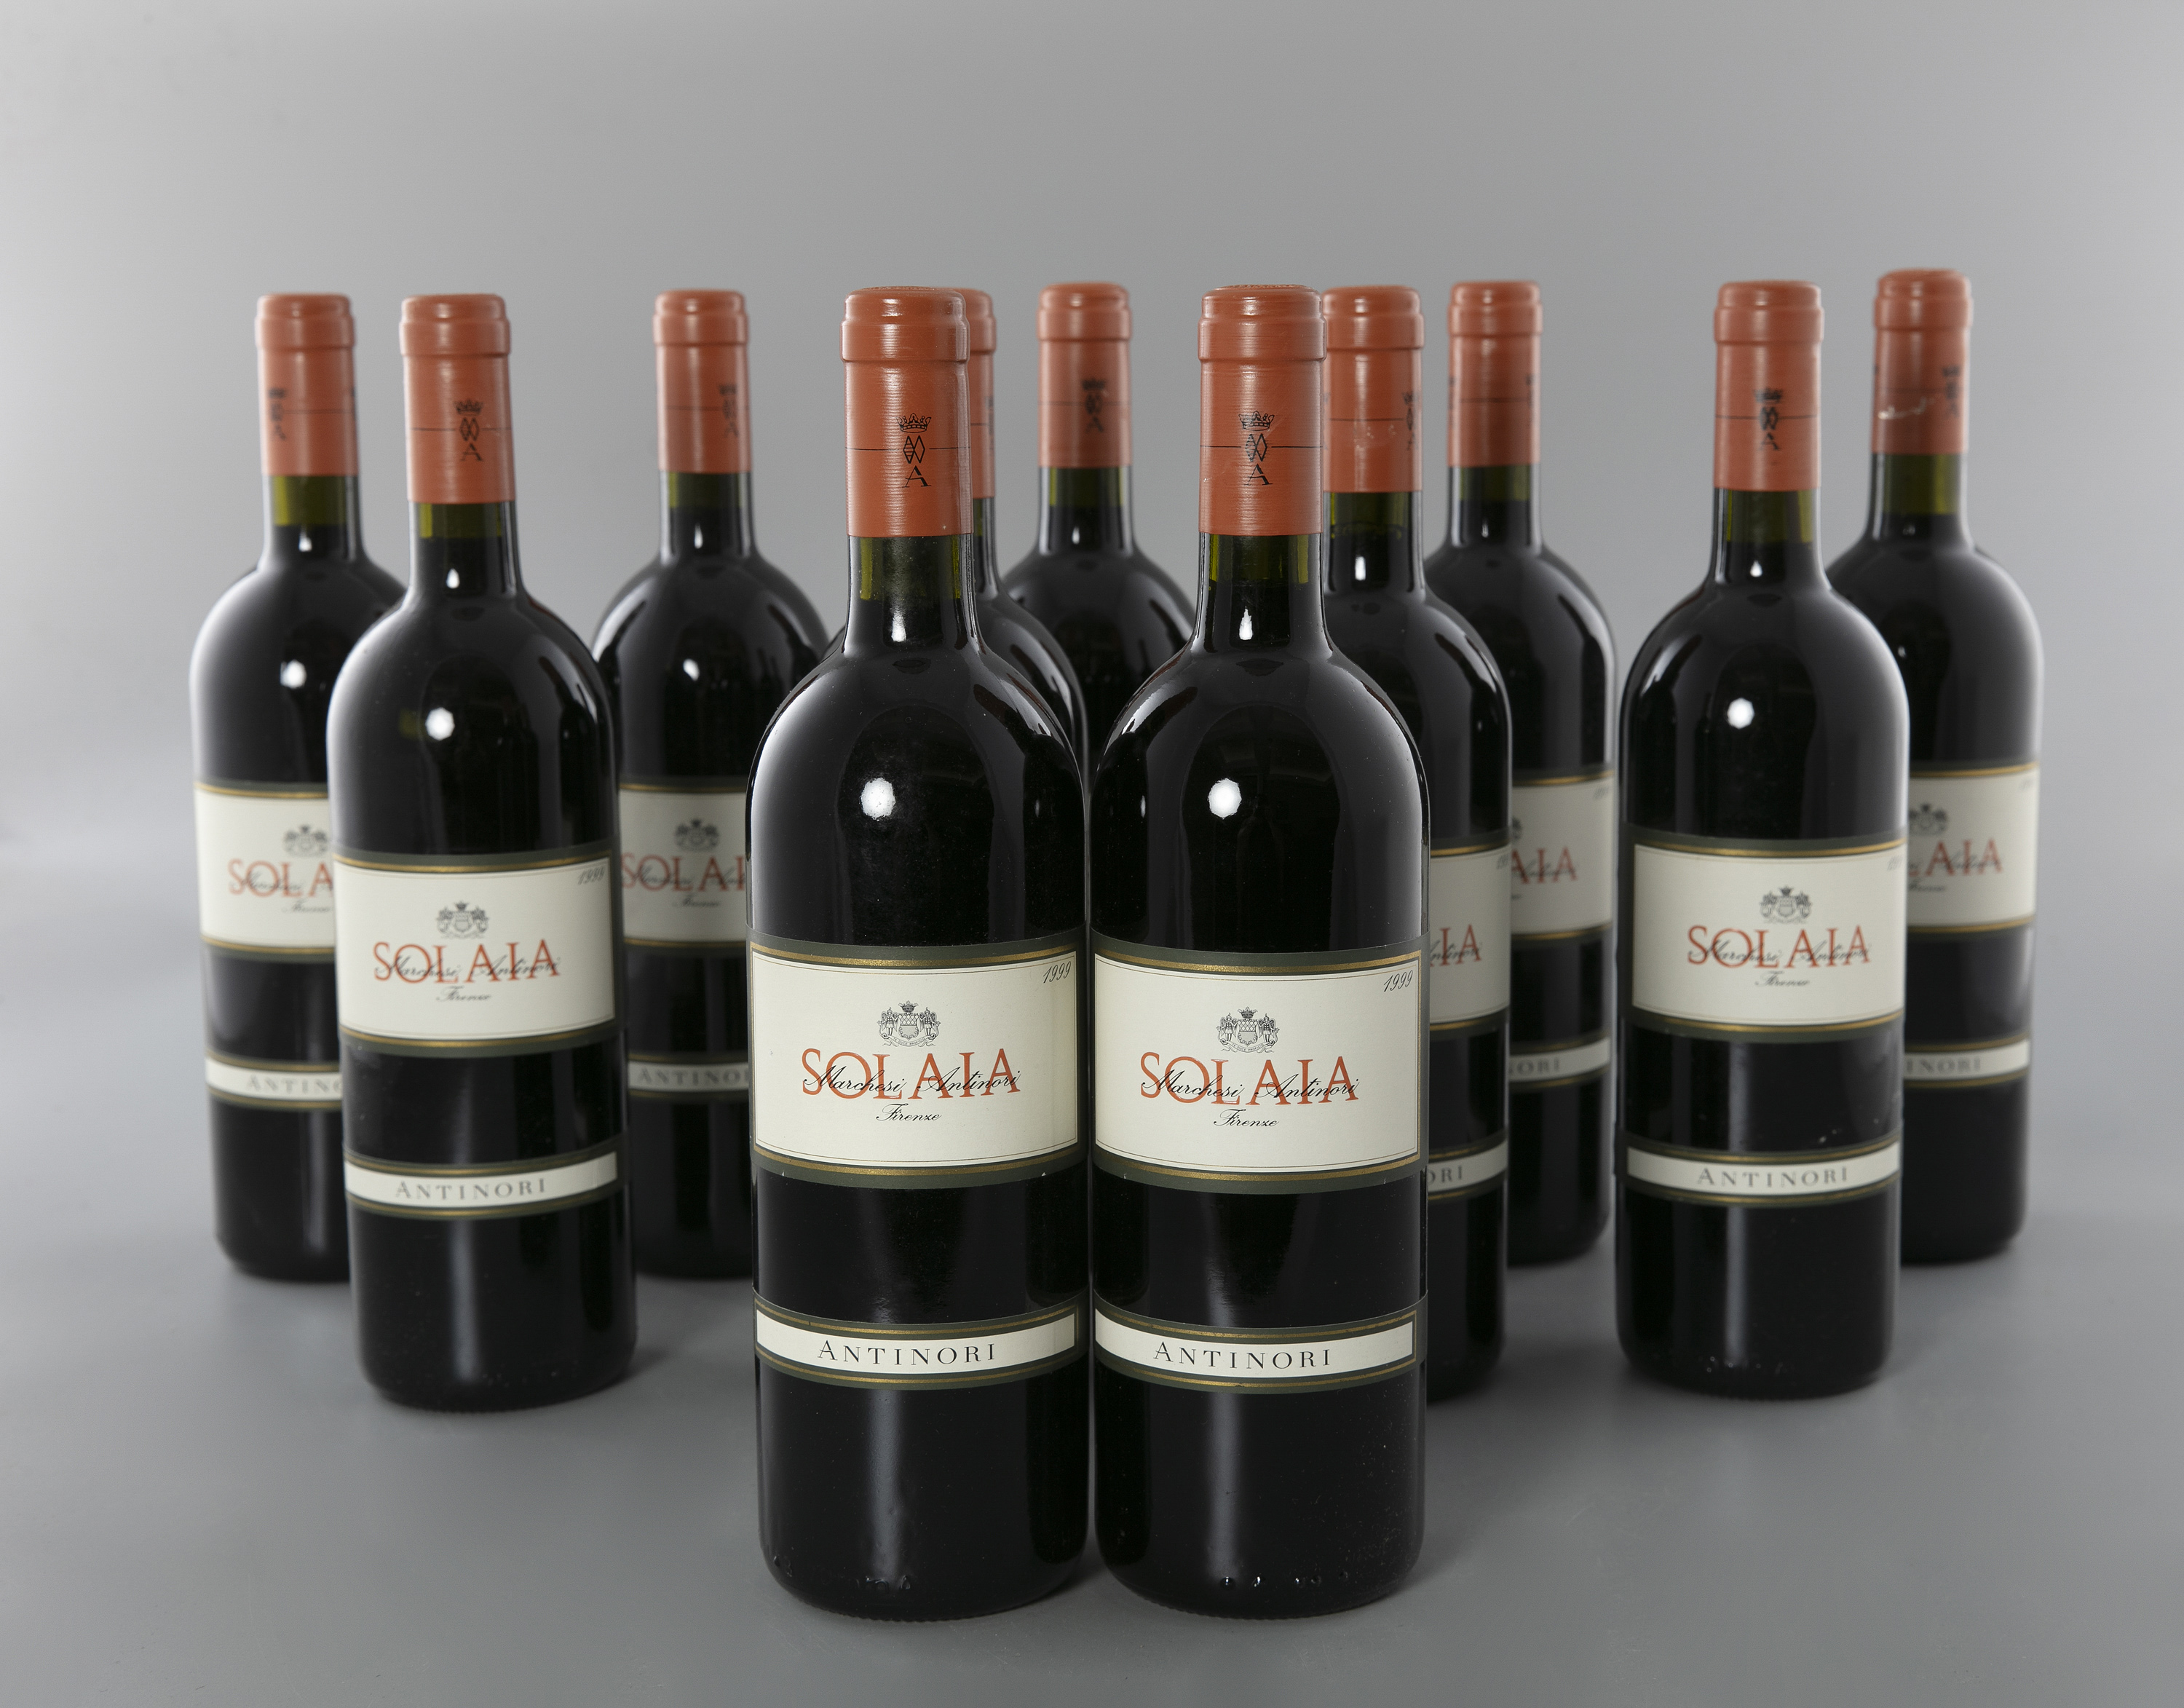 Antinori Solaia Toscana 1999 11 bottles (two cases)